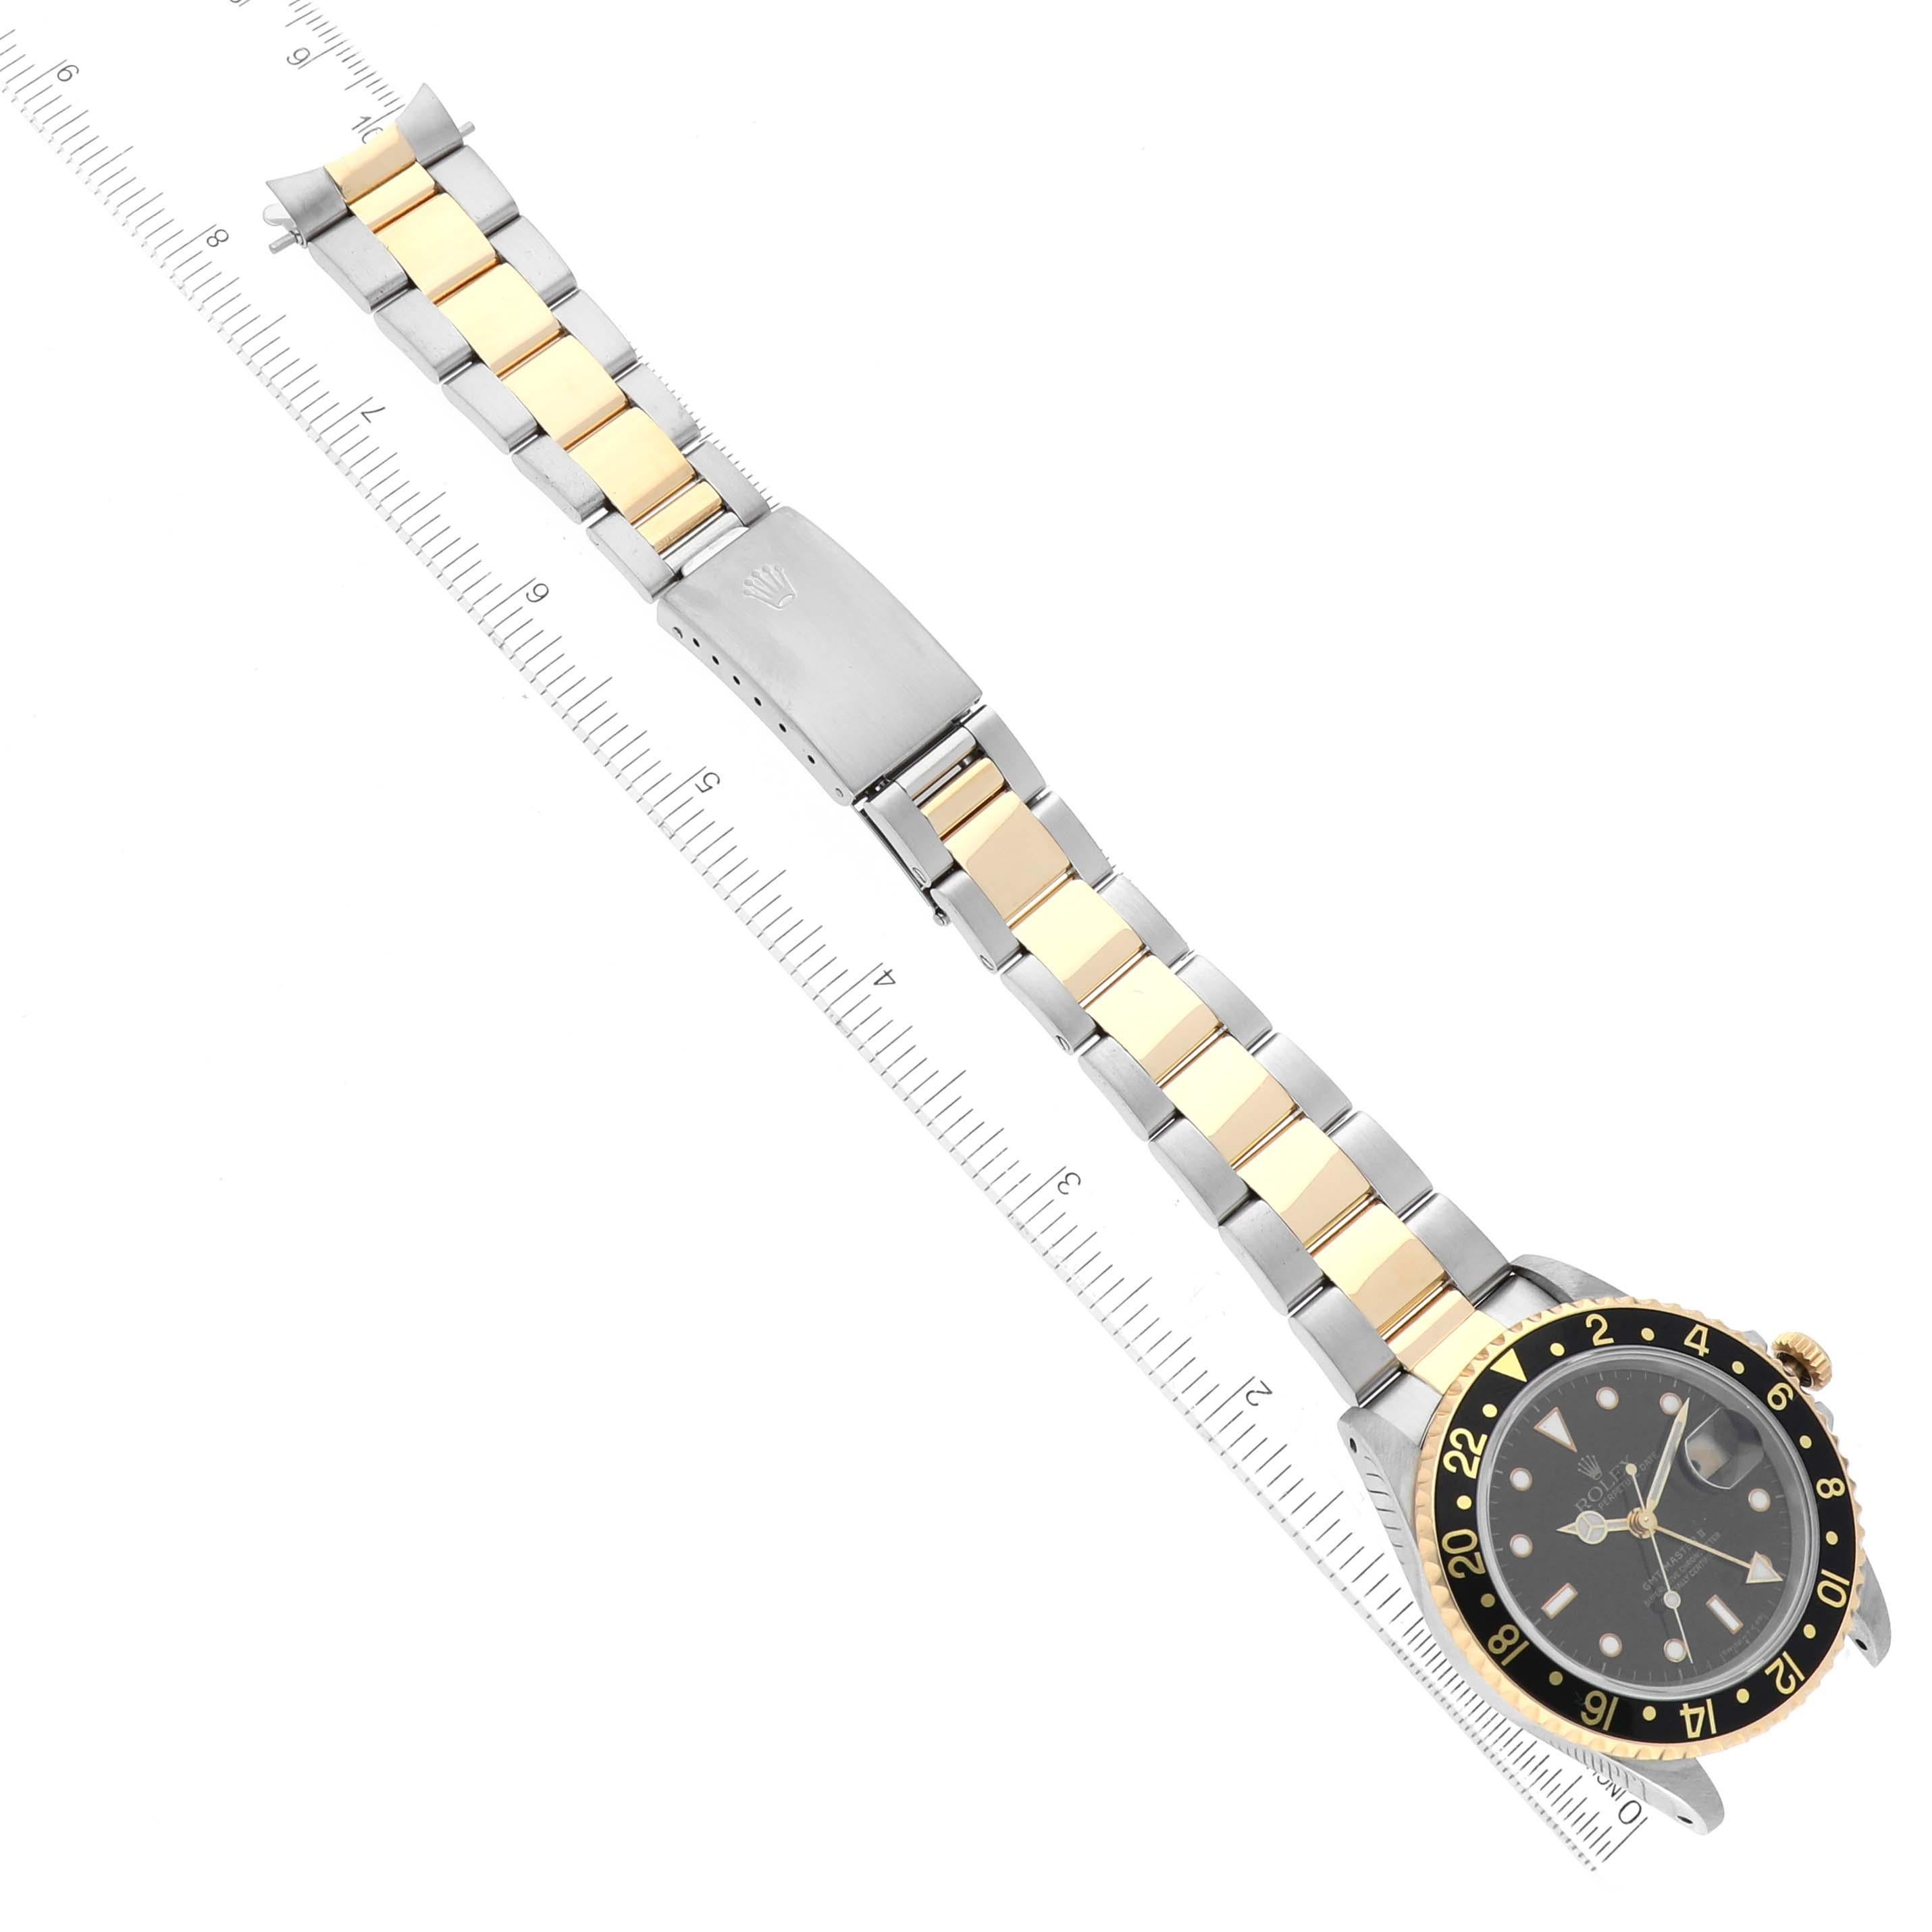 Rolex GMT Master II cadran noir or jaune acier montre homme 16713. Mouvement automatique à remontage automatique, officiellement certifié chronomètre. Boîtier en acier inoxydable de 40 mm de diamètre. Logo Rolex sur une couronne. Lunette tournante